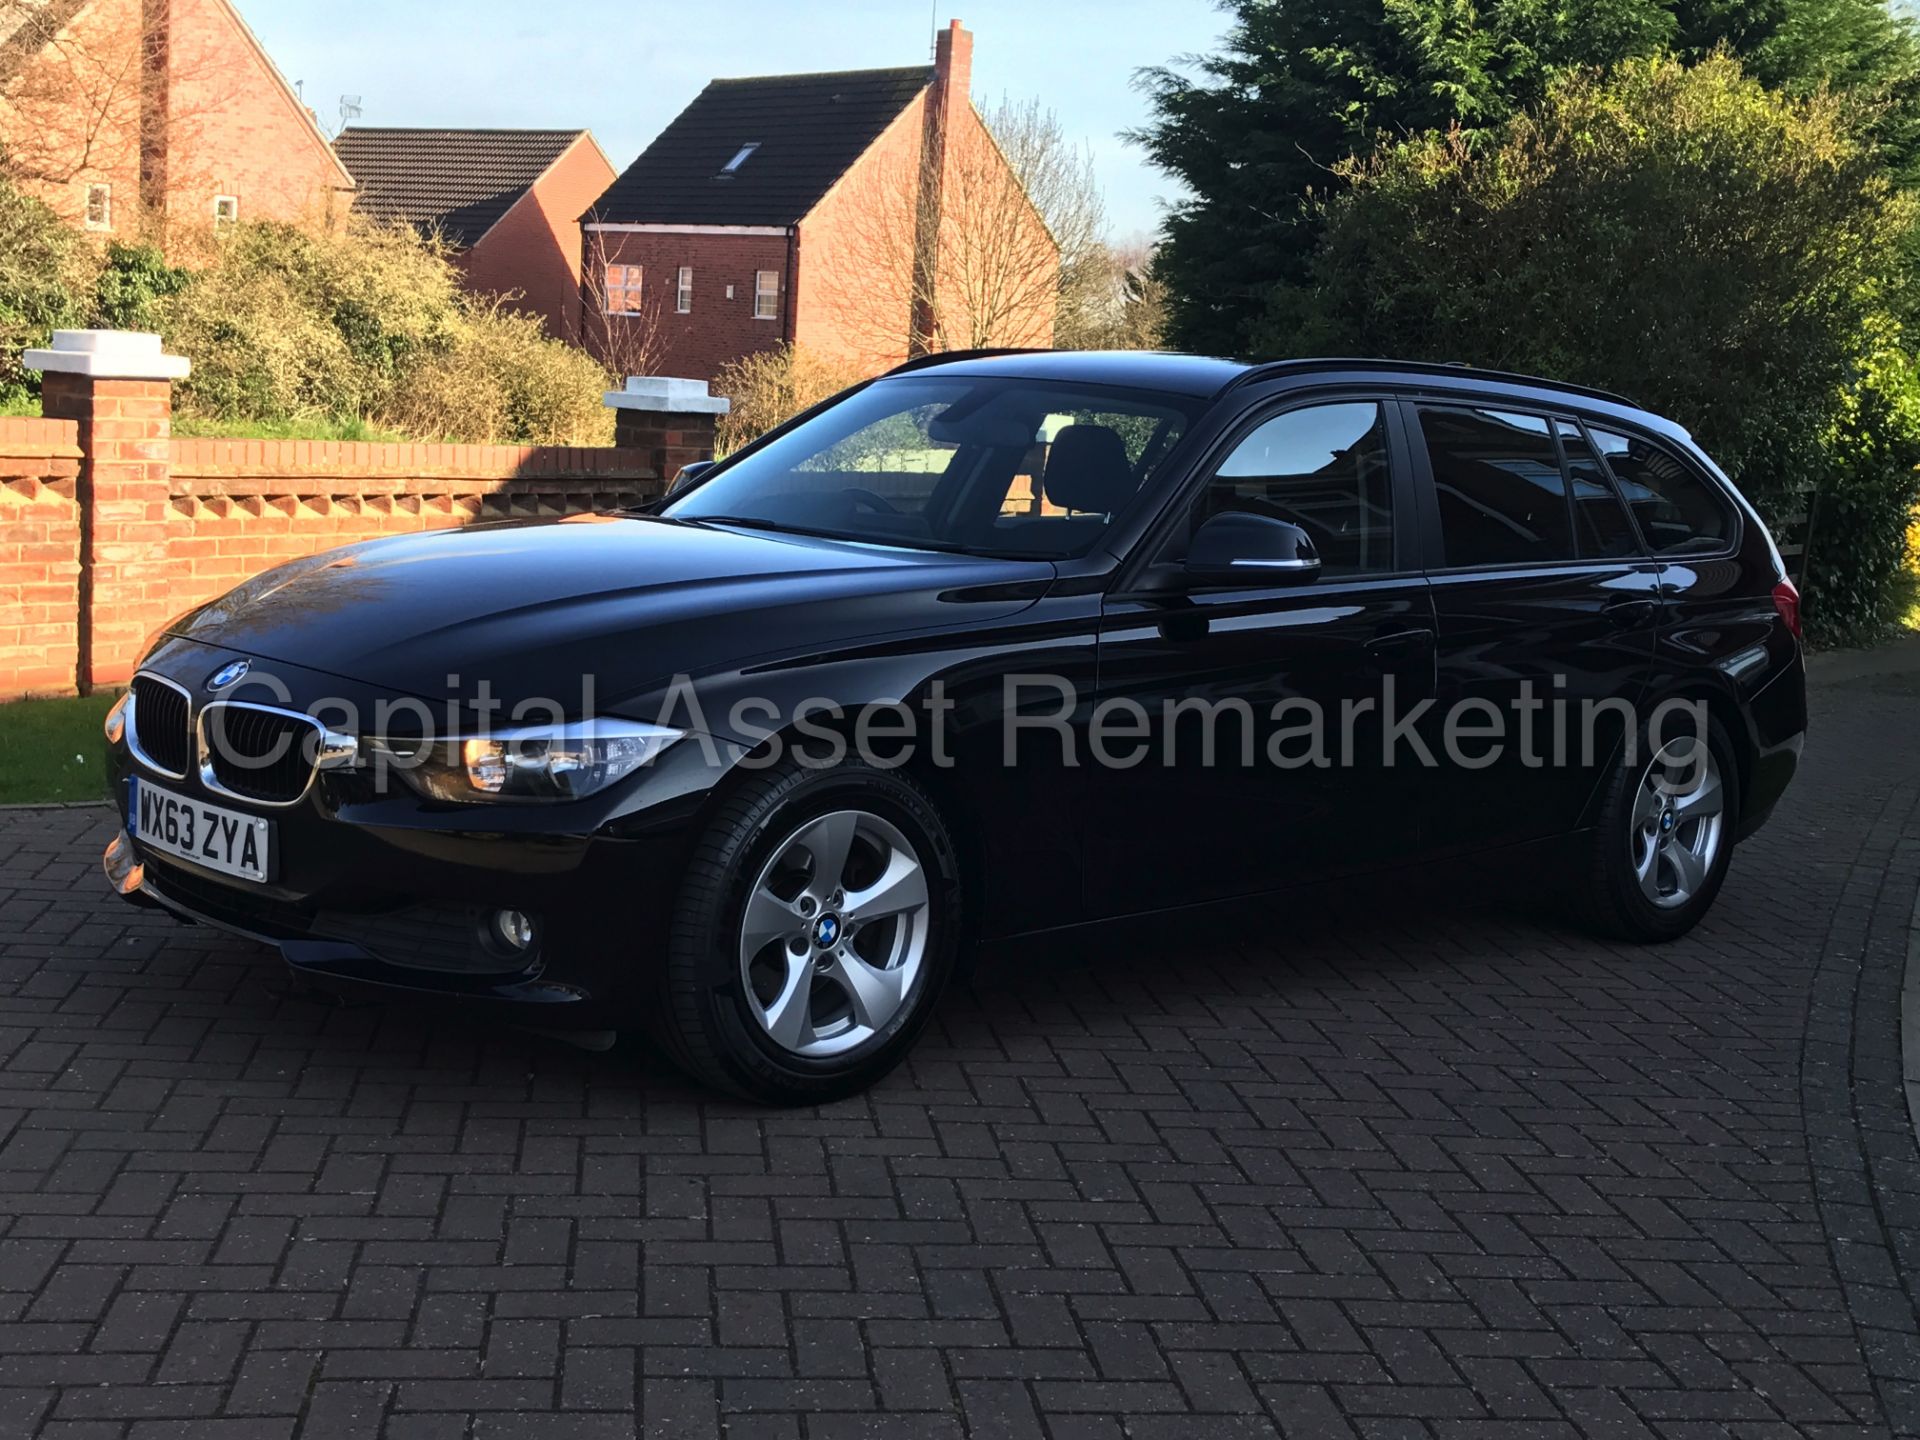 BMW 320d 'EFFICIENT DYNAMICS' TOURING / ESTATE (2014 MODEL) 1 OWNER - MASSIVE SPEC - BLACK - LOOK!!! - Image 4 of 29